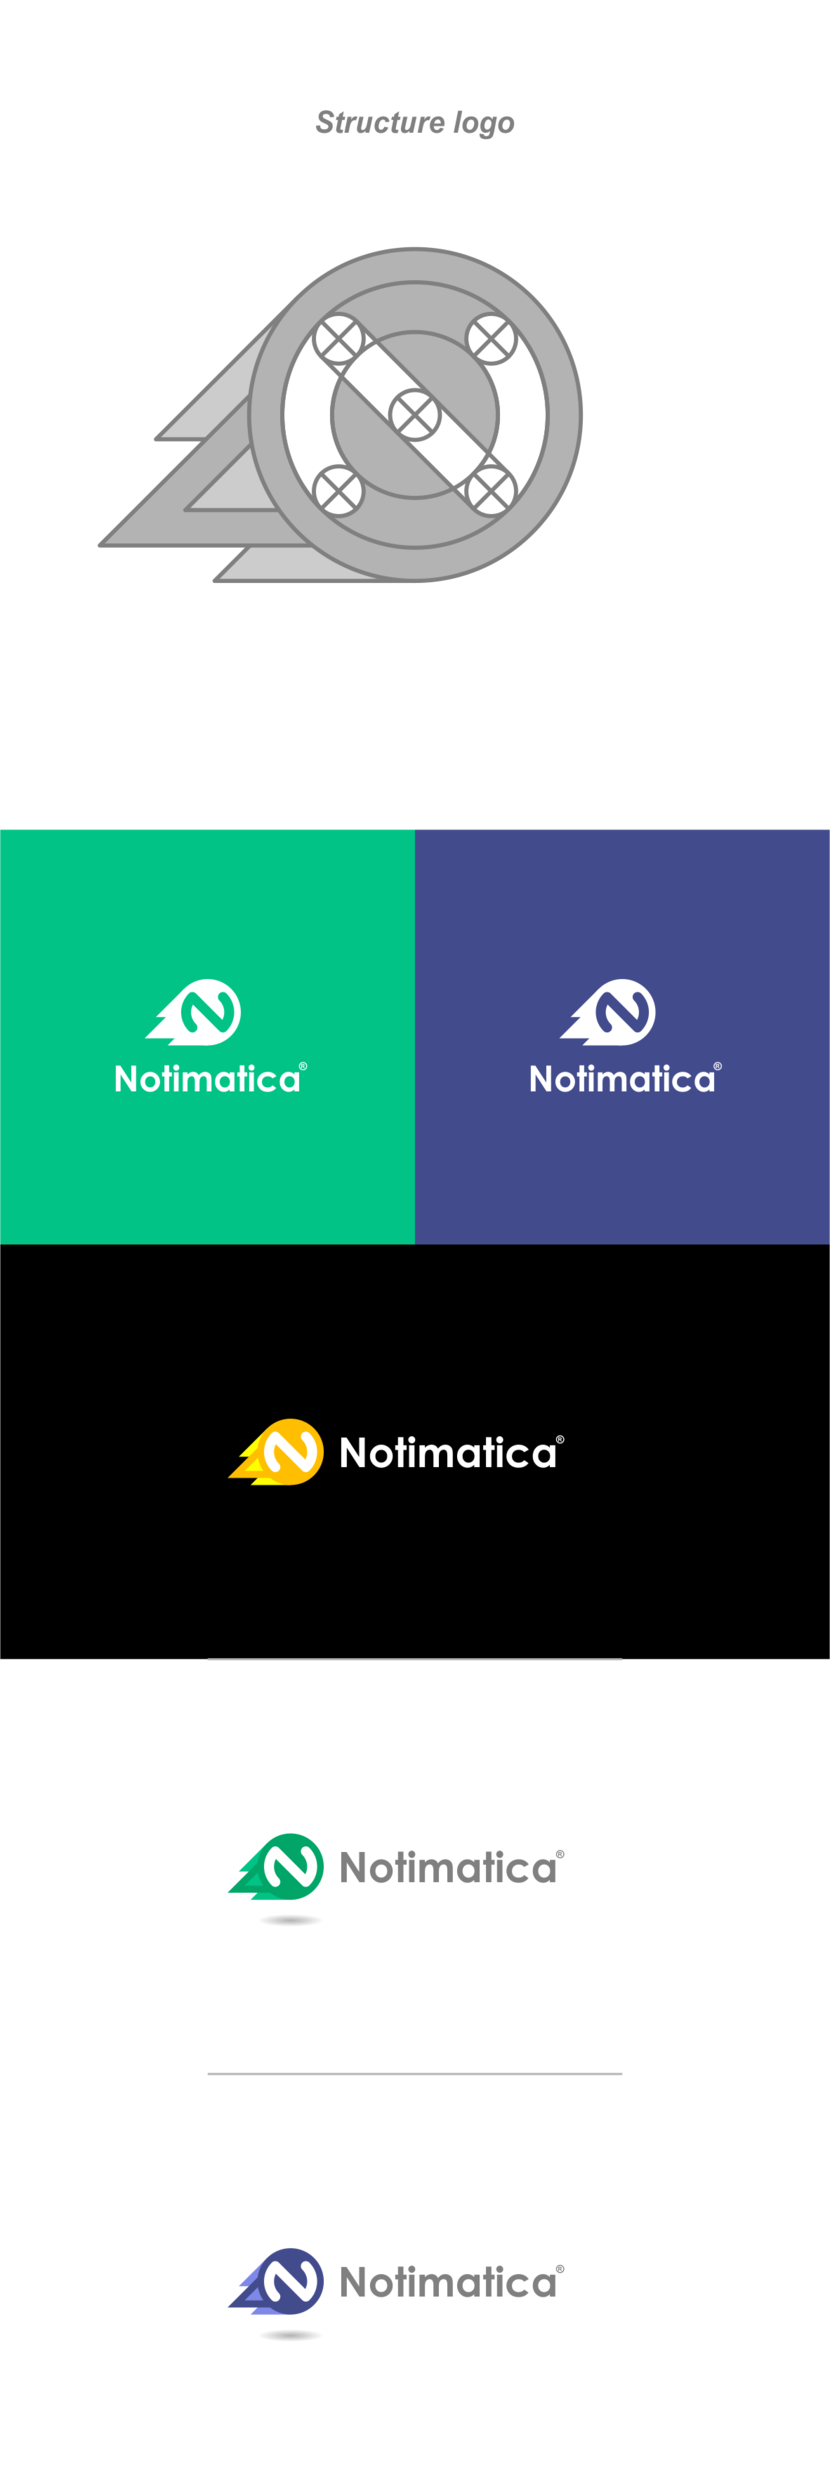 + - Разработать логотип веб-сервиса Notimatica.io